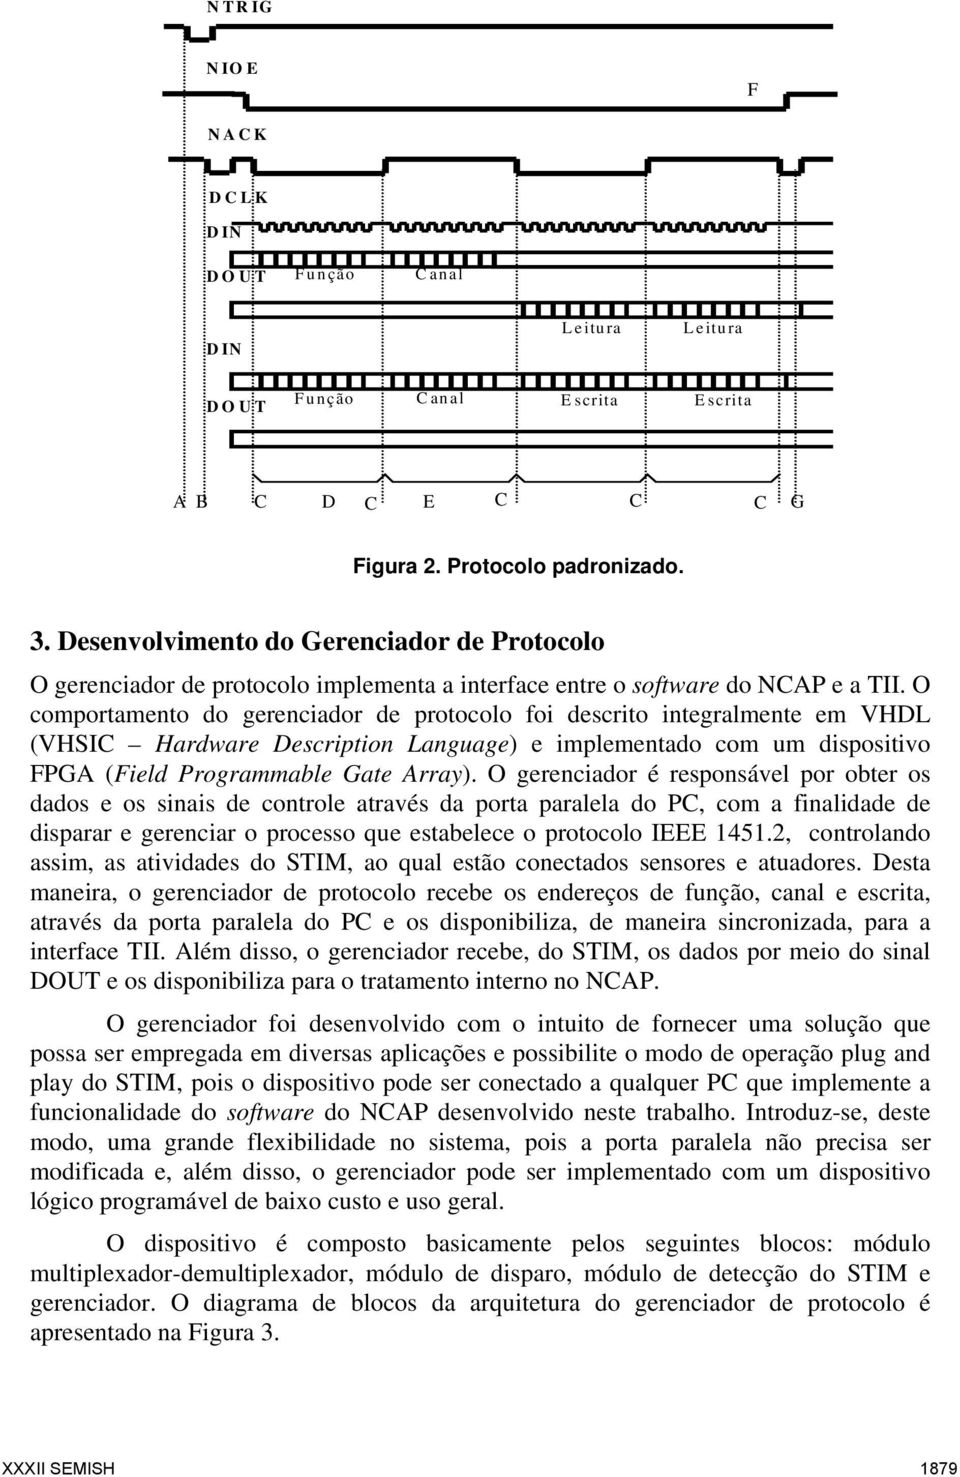 O comportamento do gerenciador de protocolo foi descrito integralmente em VHDL (VHSIC Hardware Description Language) e implementado com um dispositivo FPGA (Field Programmable Gate Array).